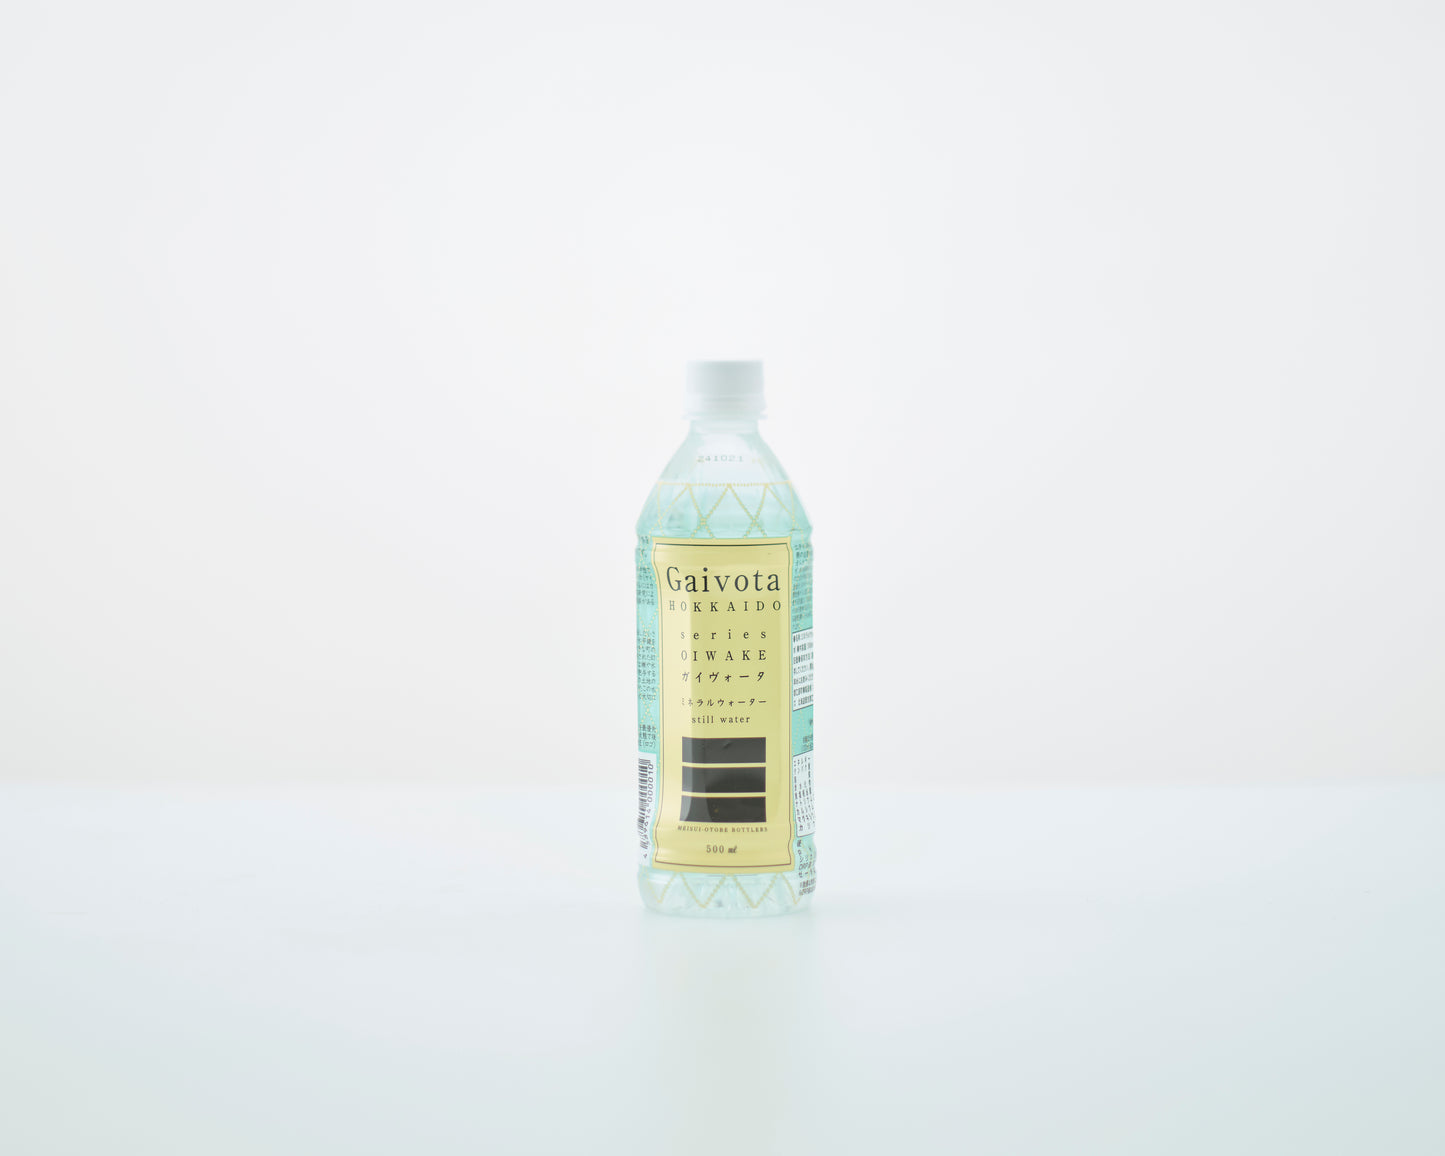 Gaivota mineral water/still water (500ml)